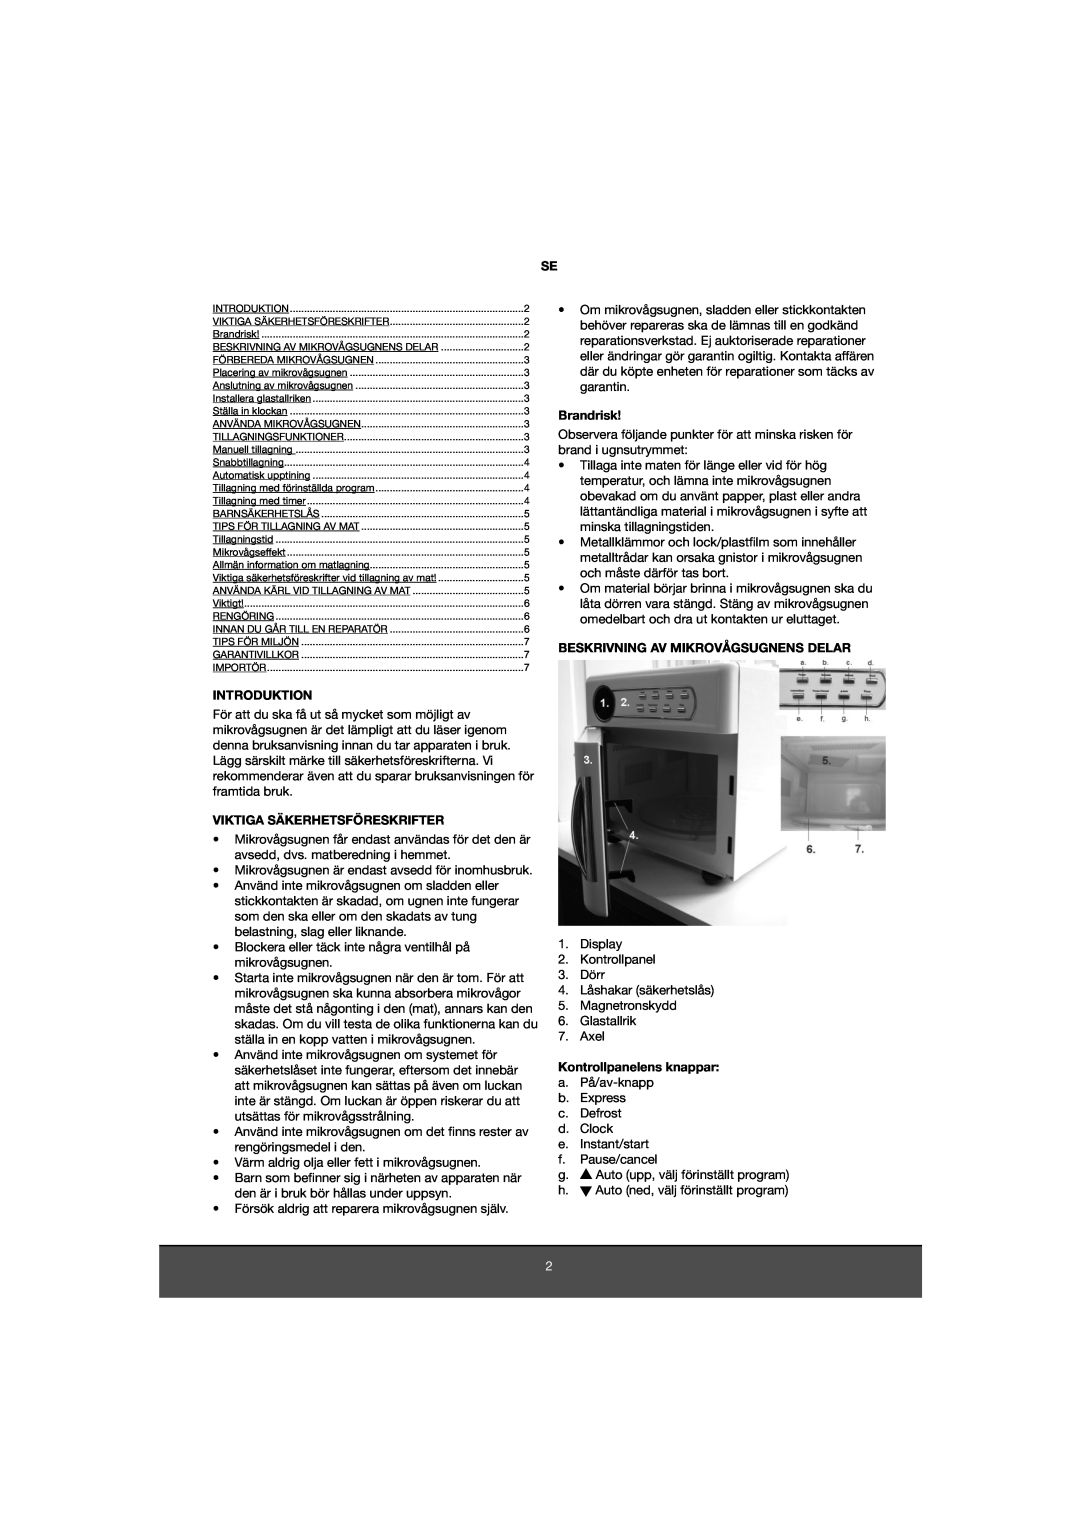 Melissa 653-081 manual Introduktion, Viktiga Säkerhetsföreskrifter, Brandrisk, Beskrivning Av Mikrovågsugnens Delar 